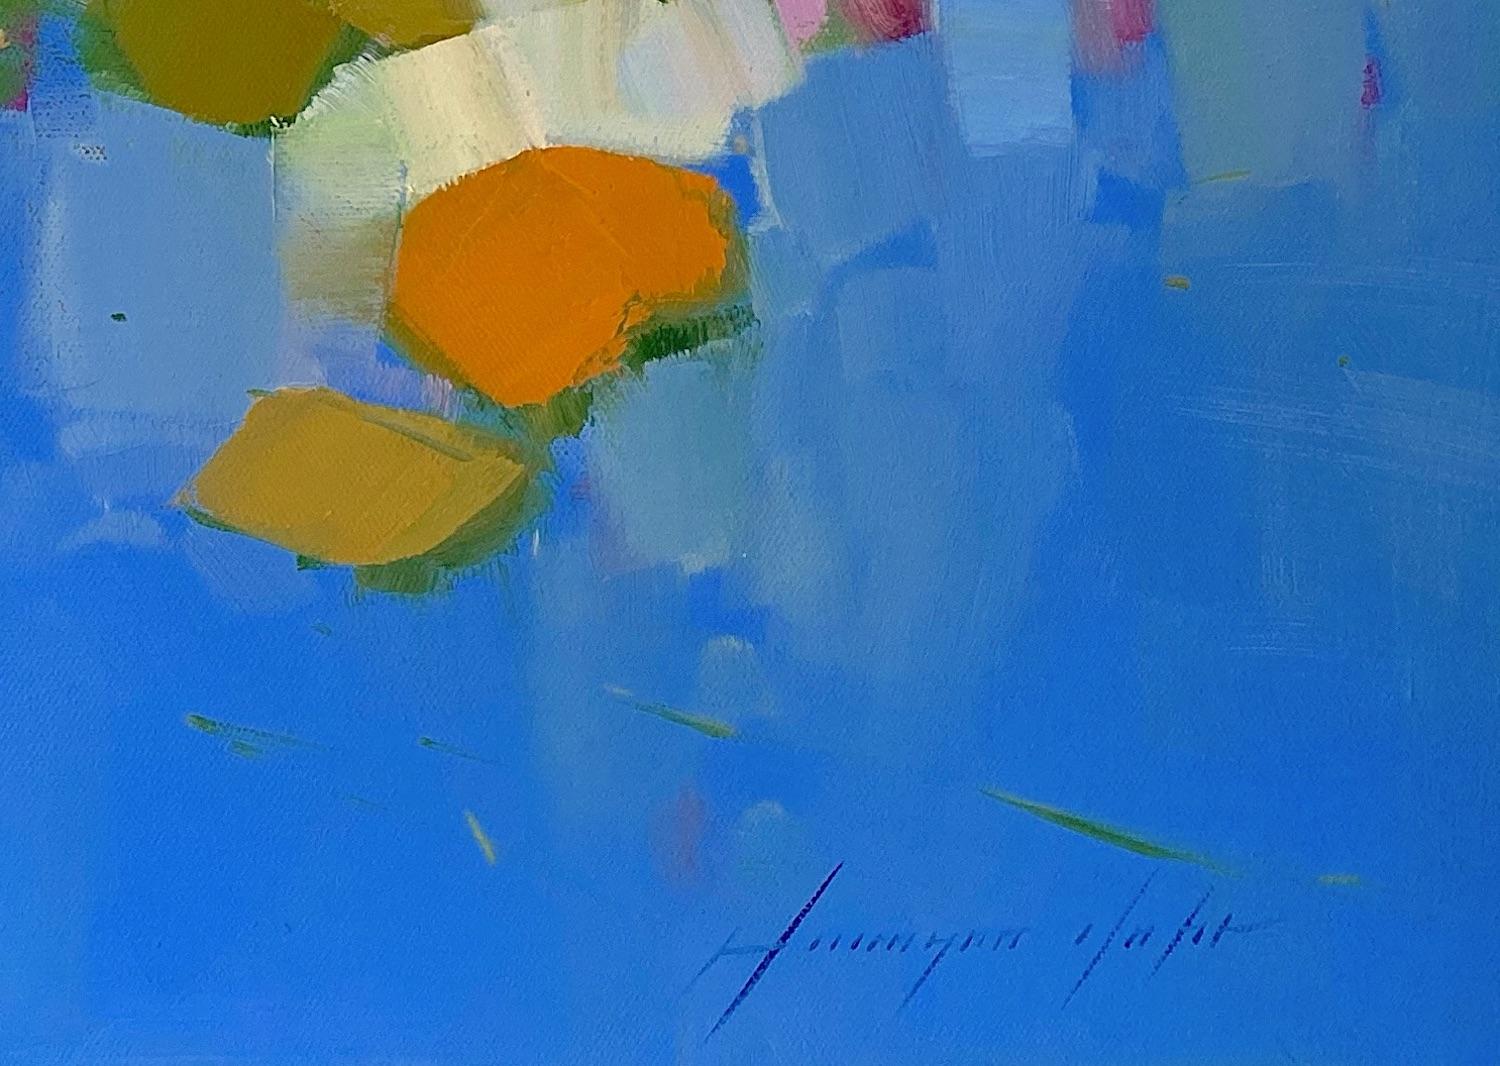 <p>Kommentare des Künstlers<br />Mit einem Spachtel hat der Künstler Vahe Yeremyan diese heiteren Seerosen in einer abstrakten Darstellung von Grün-, Orange- und Rosatönen auf einem durchsichtigen Blau eingefangen. Die Lilienblätter und rosa Blüten